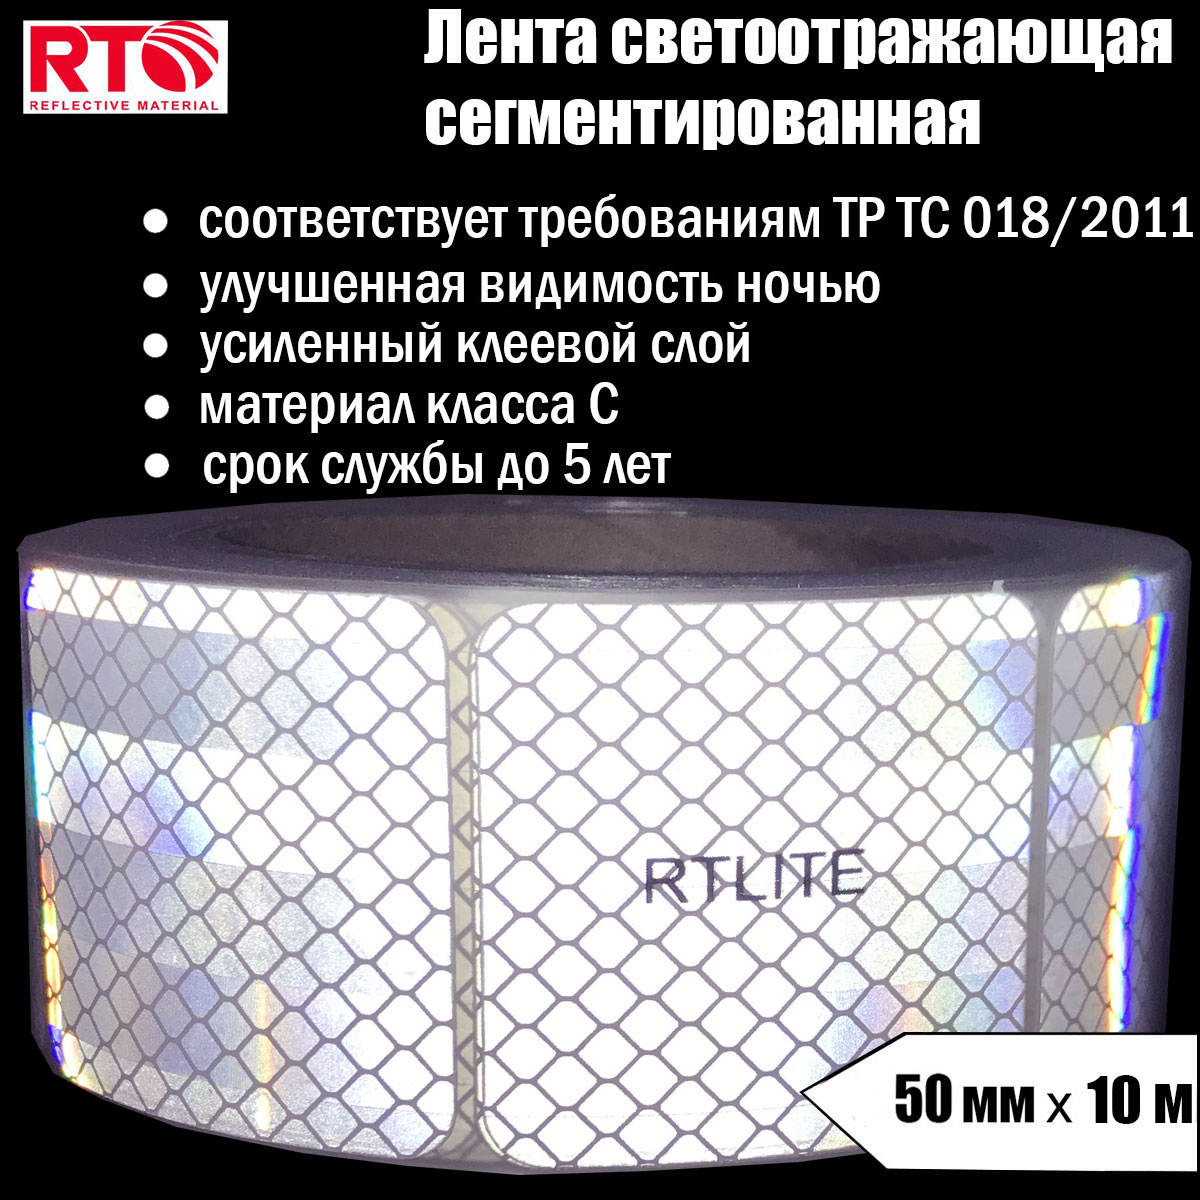 Лента светоотражающая сегментированная RTLITE RT-V104 для контурной маркировки, 50мм х 10м